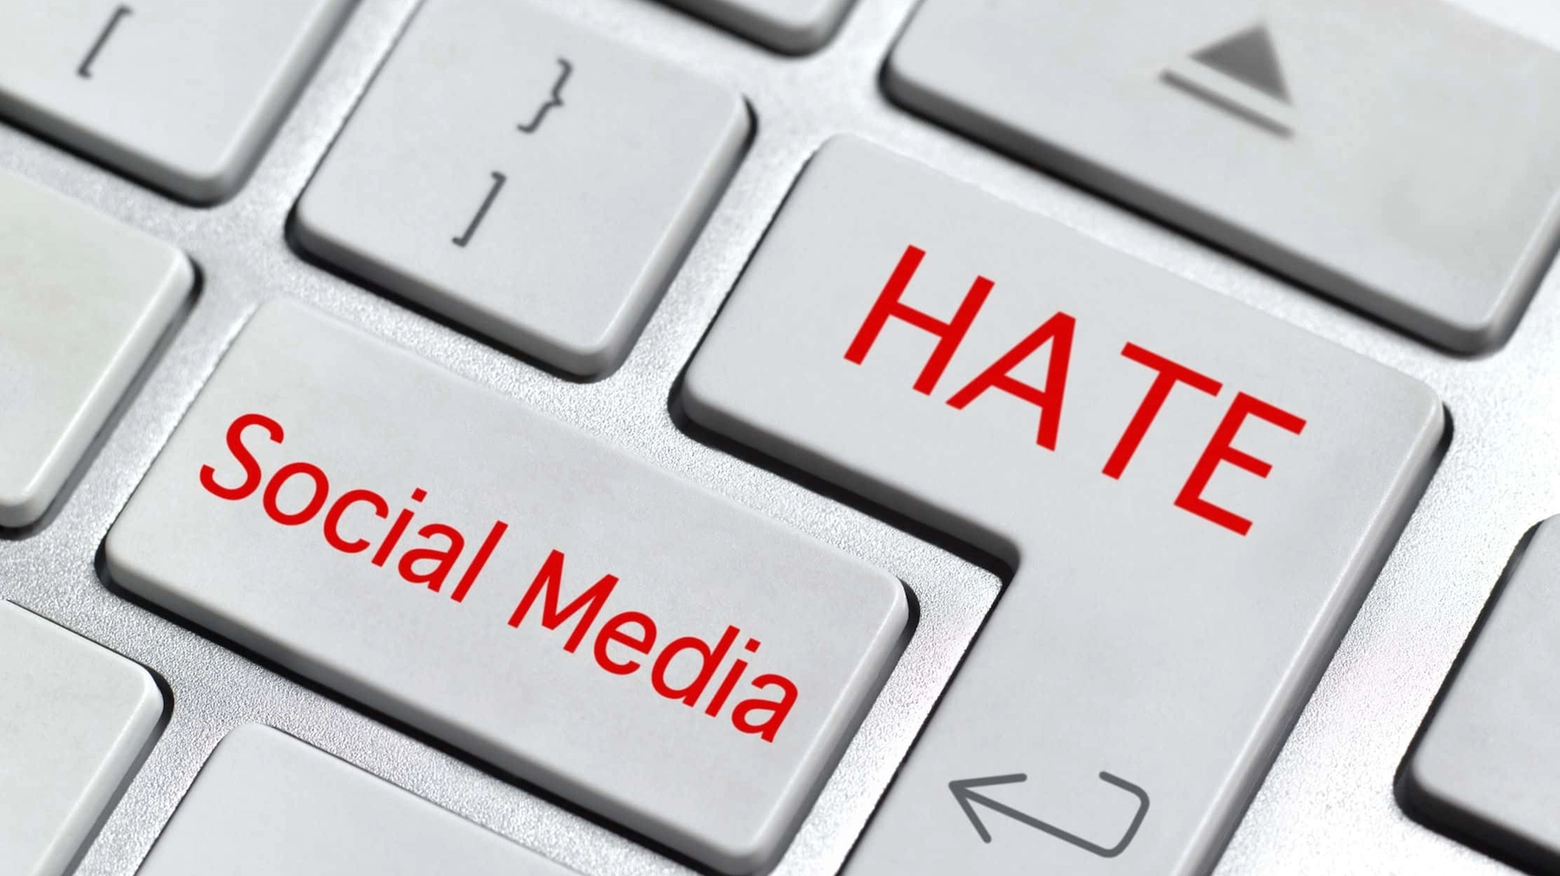 Cresce e si radicalizza l'odio on-line